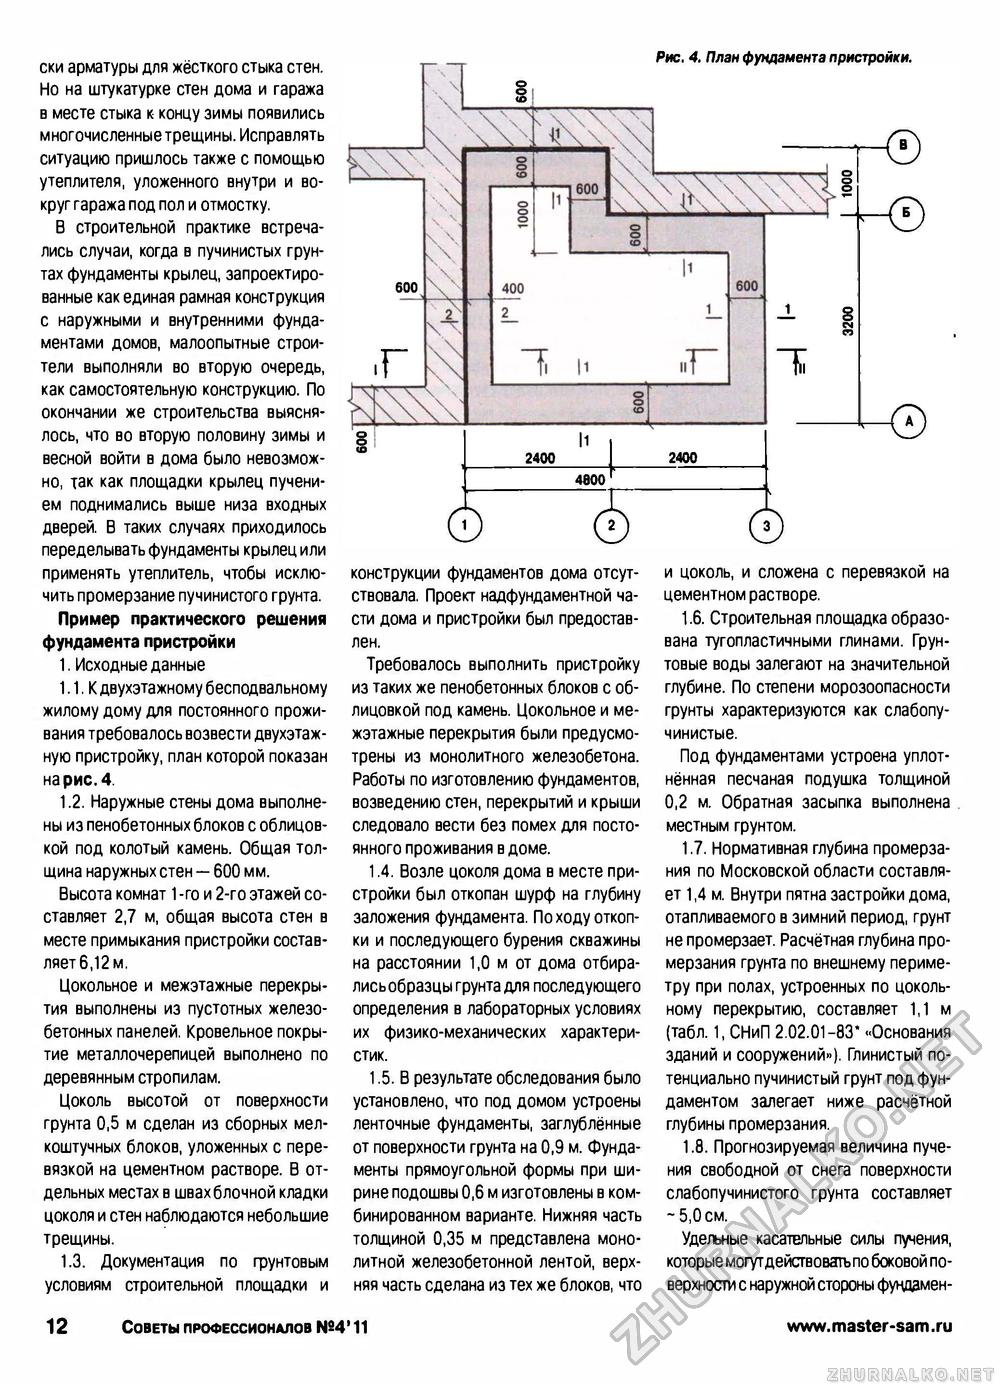 Советы профессионалов 2011-04, страница 12